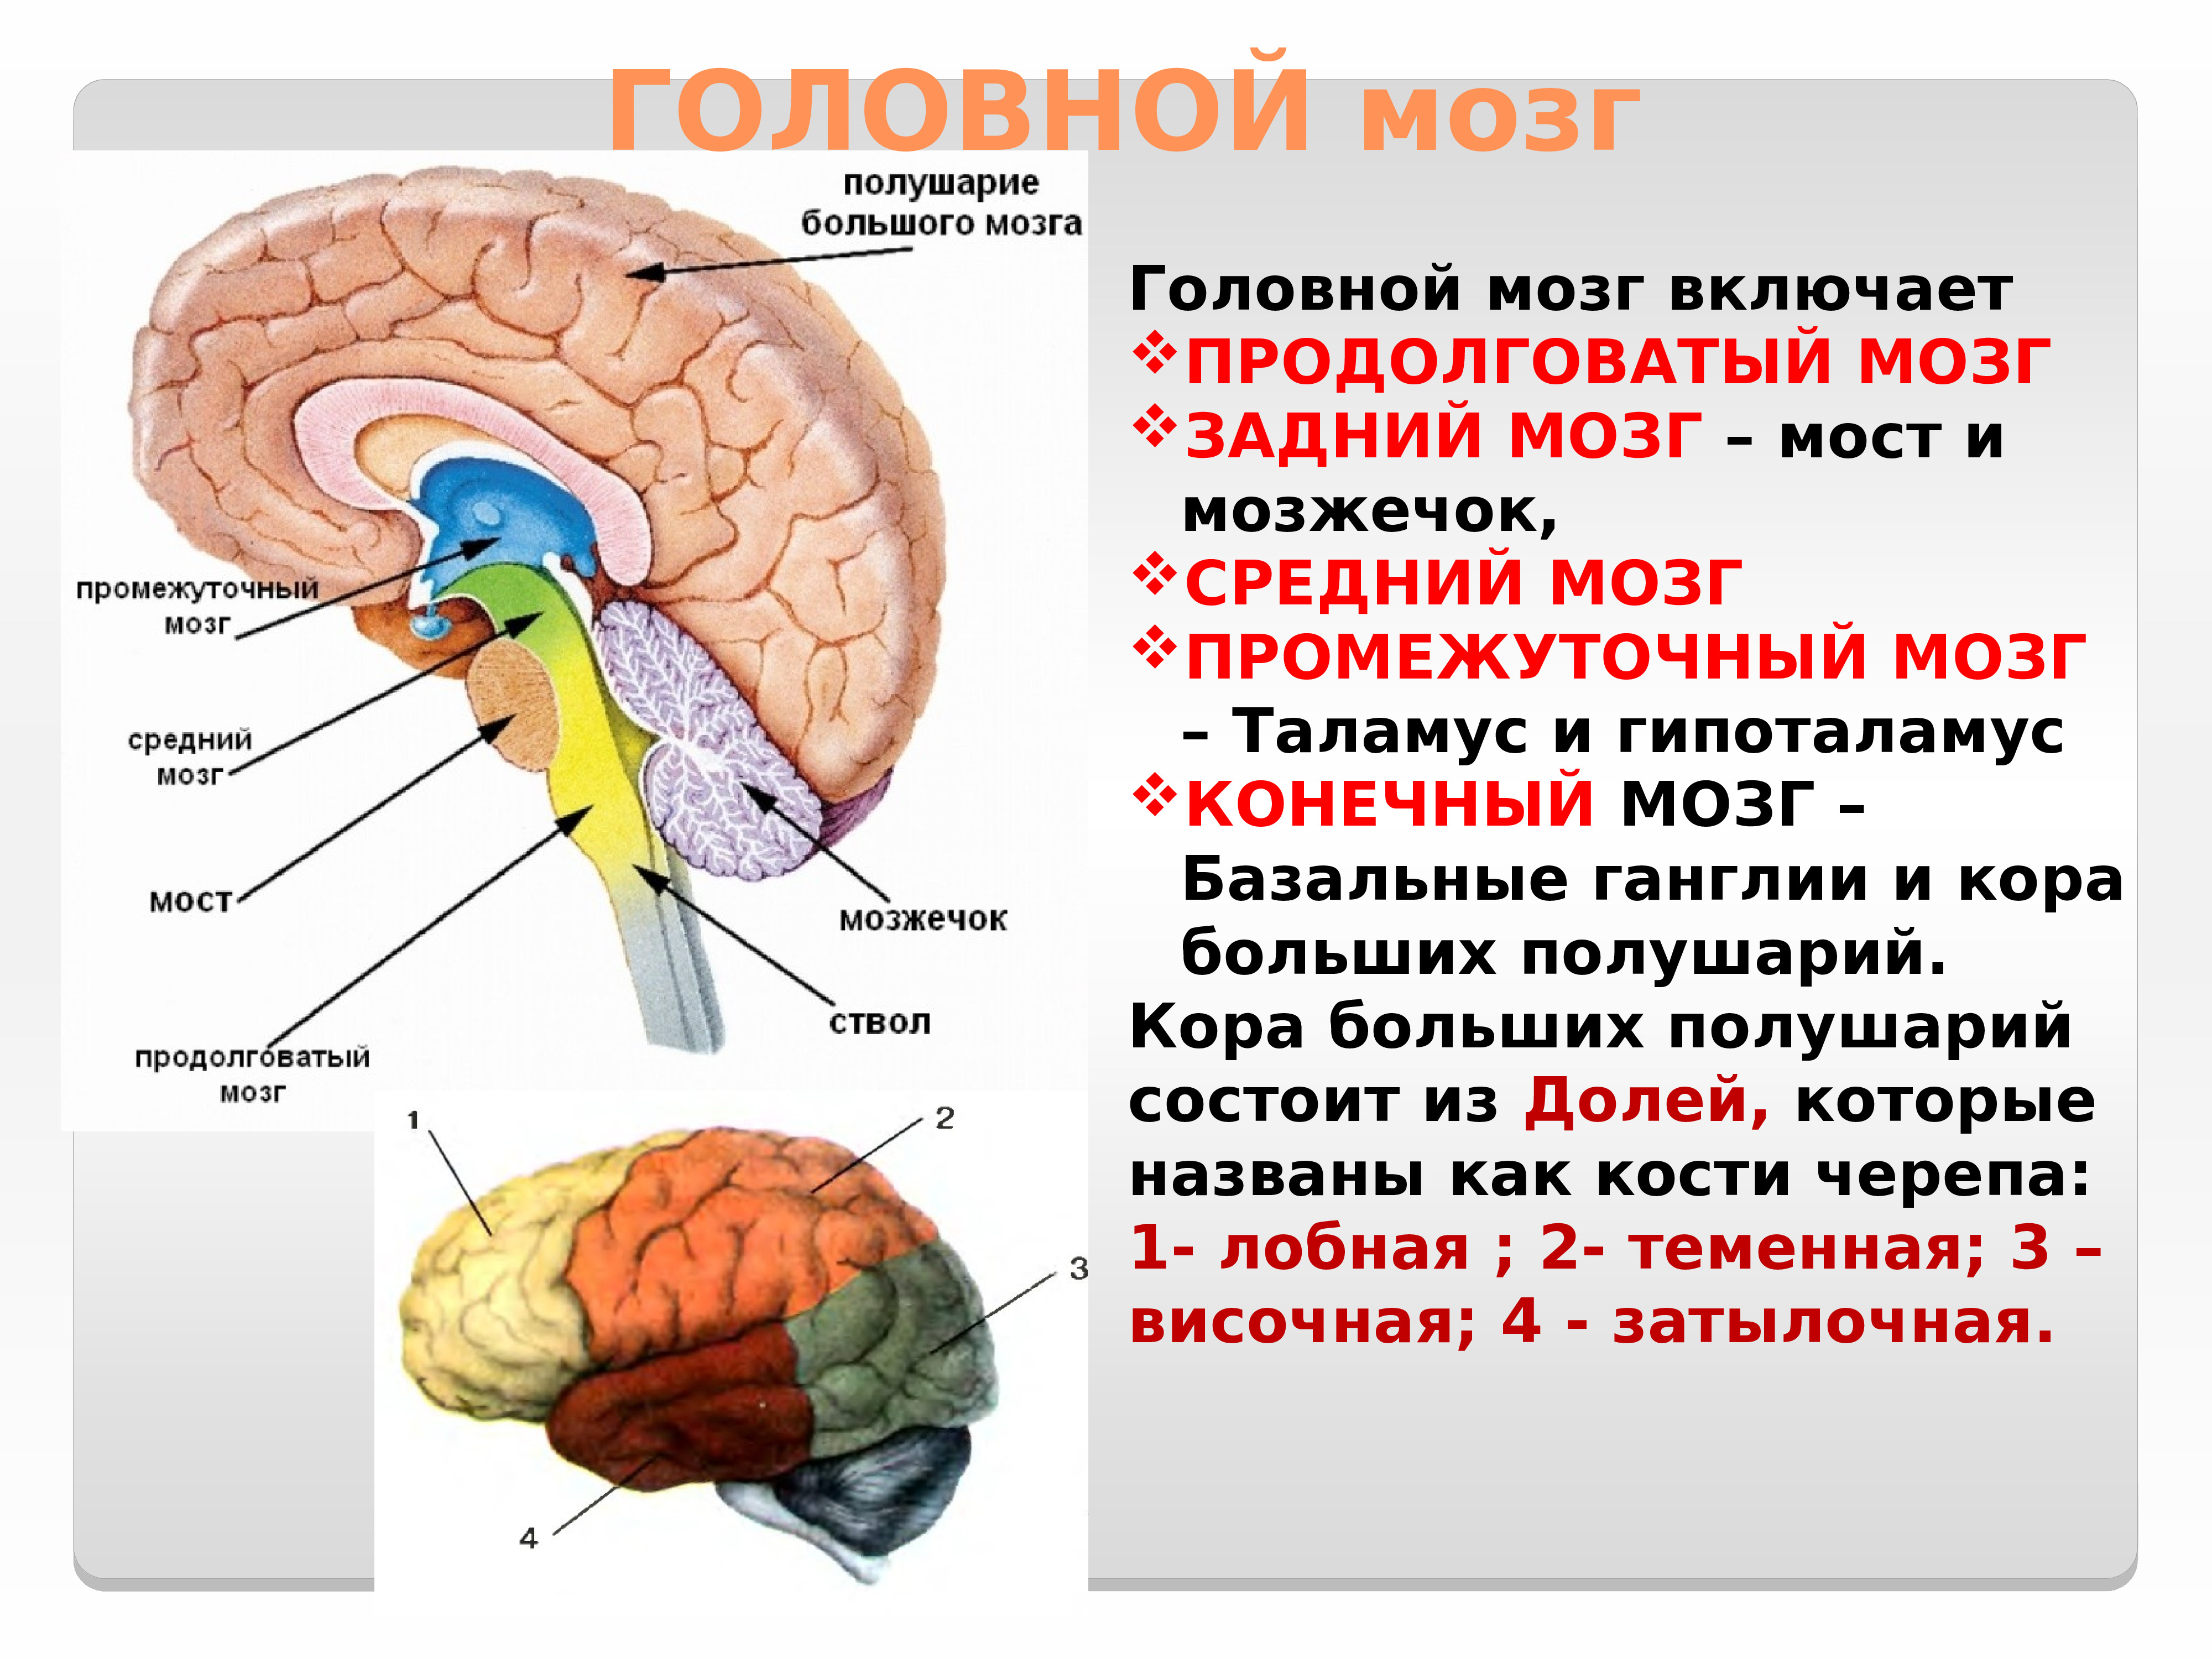 В задний мозг входит мозжечок. Отдел головного мозга продолговатый мозг промежуточный мозг. Головной мозг строение мозжечок мост. Строение головного мозга ствол мозжечок.